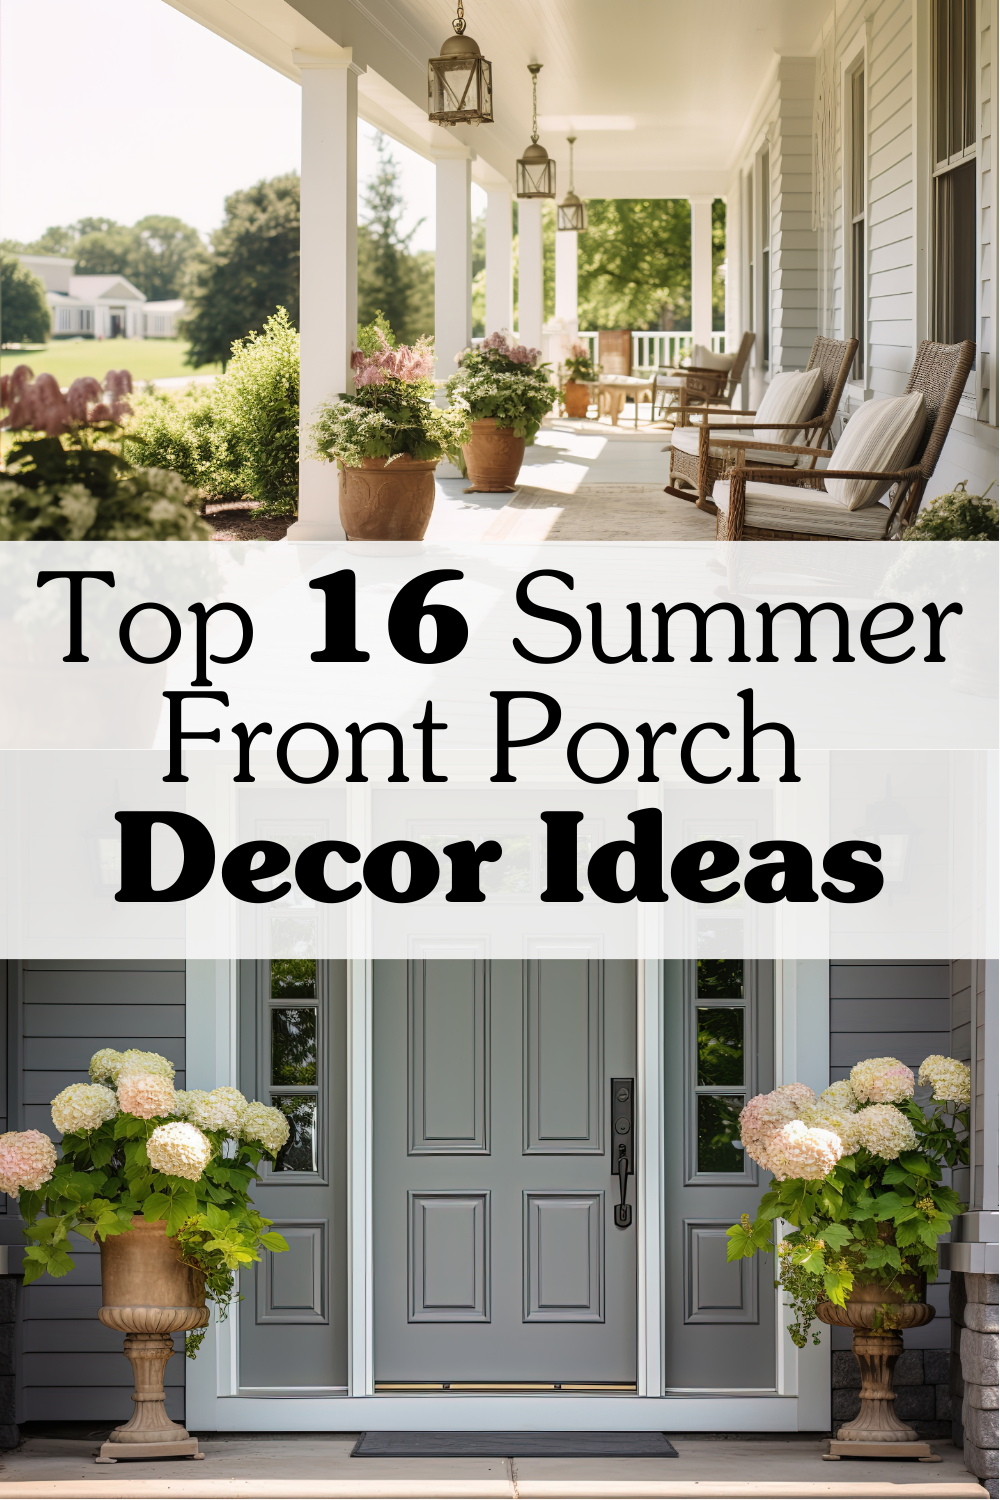 Summer front porch decor ideas pinterest pin. 